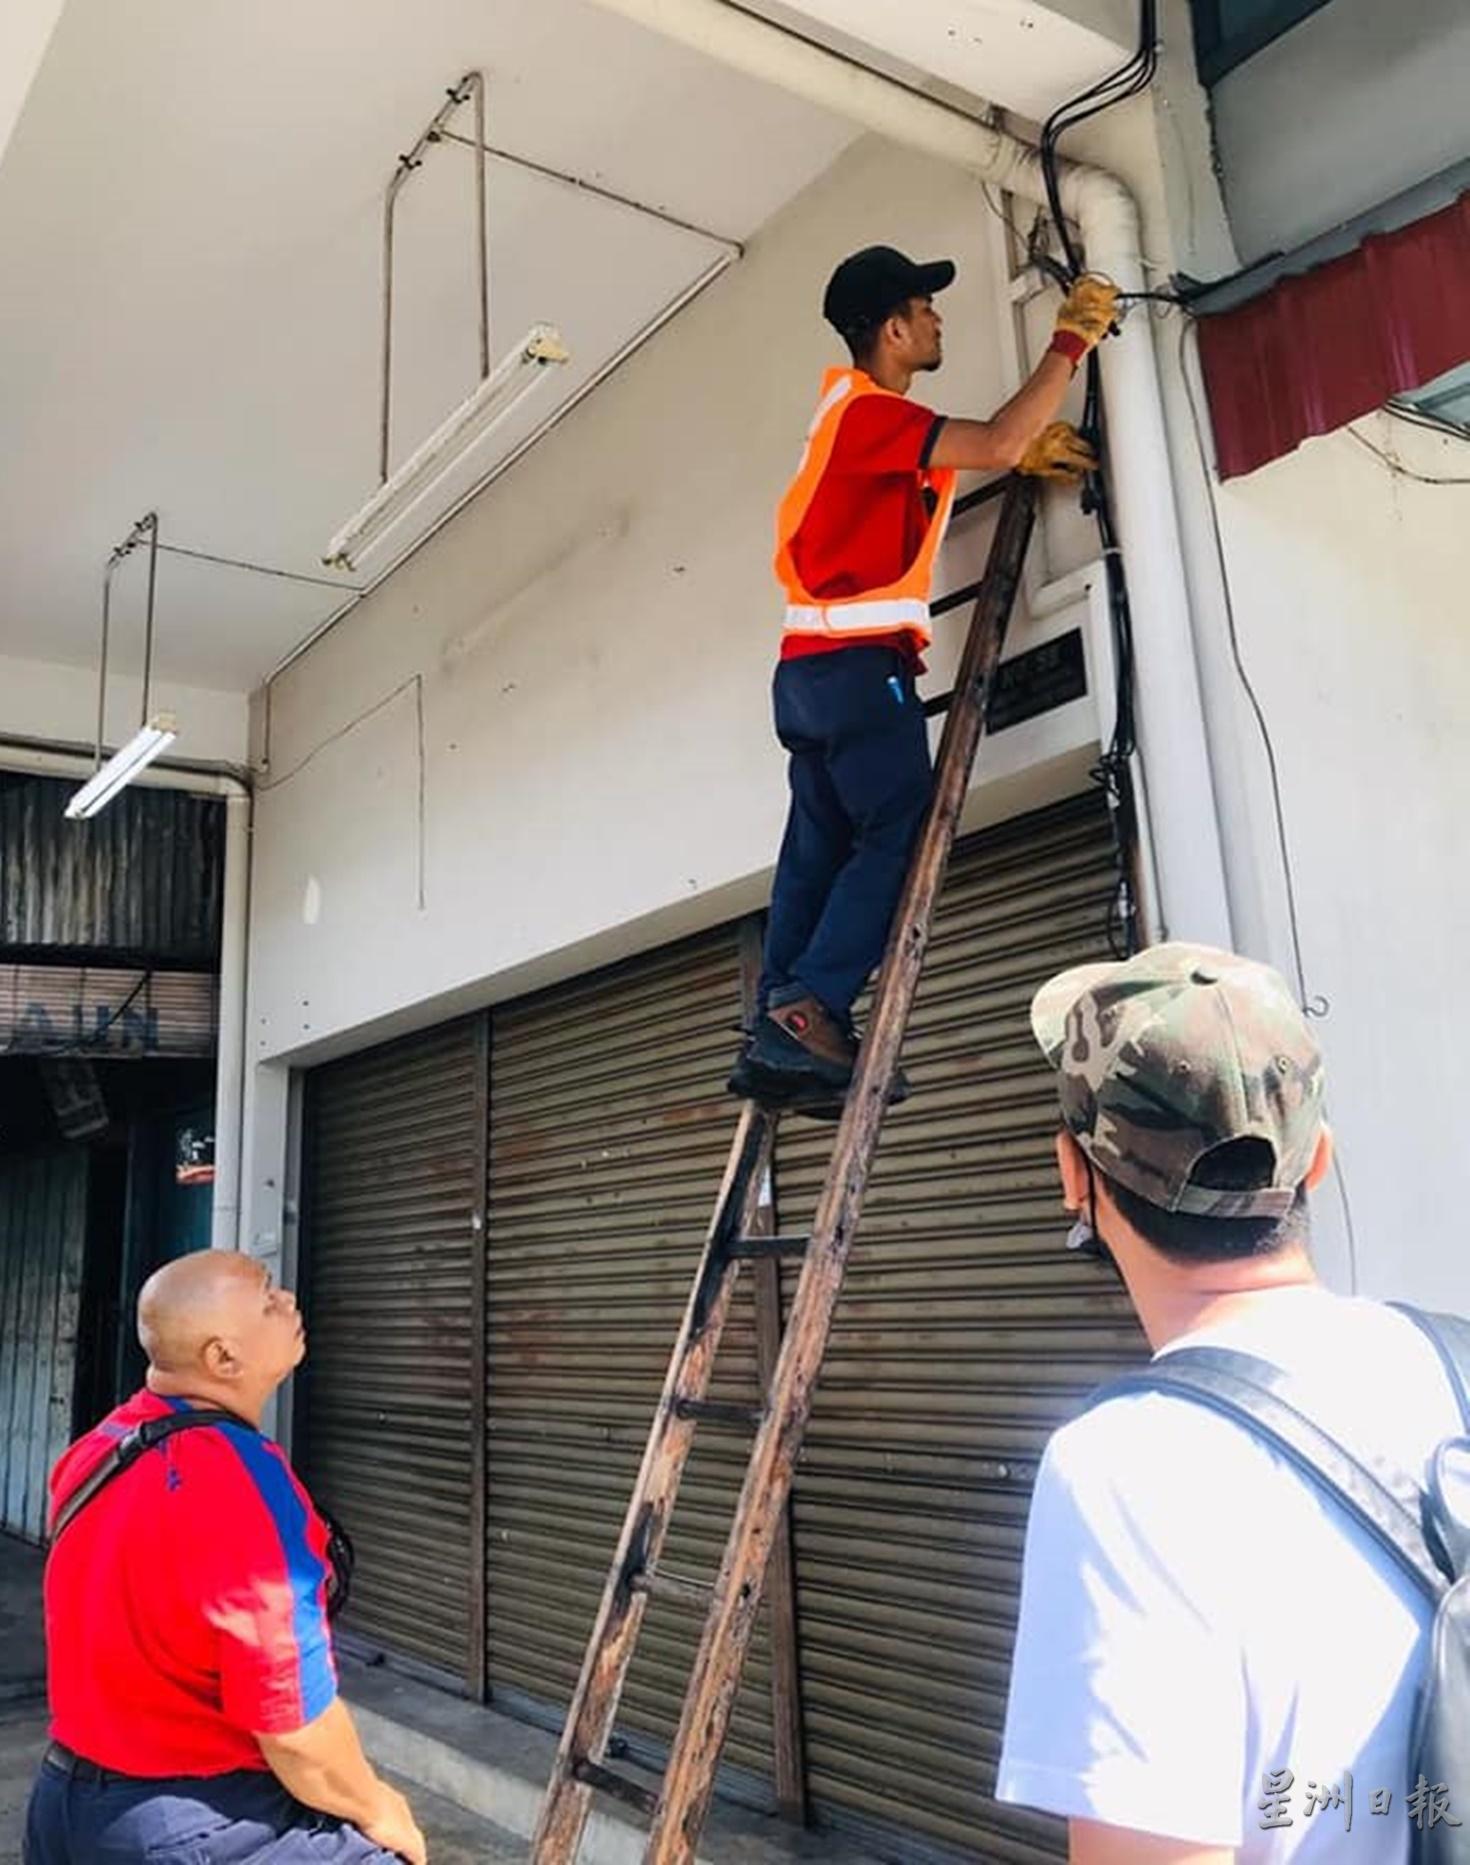 国能公司技工登上梯子，将衔接到商店内的电线剪断。